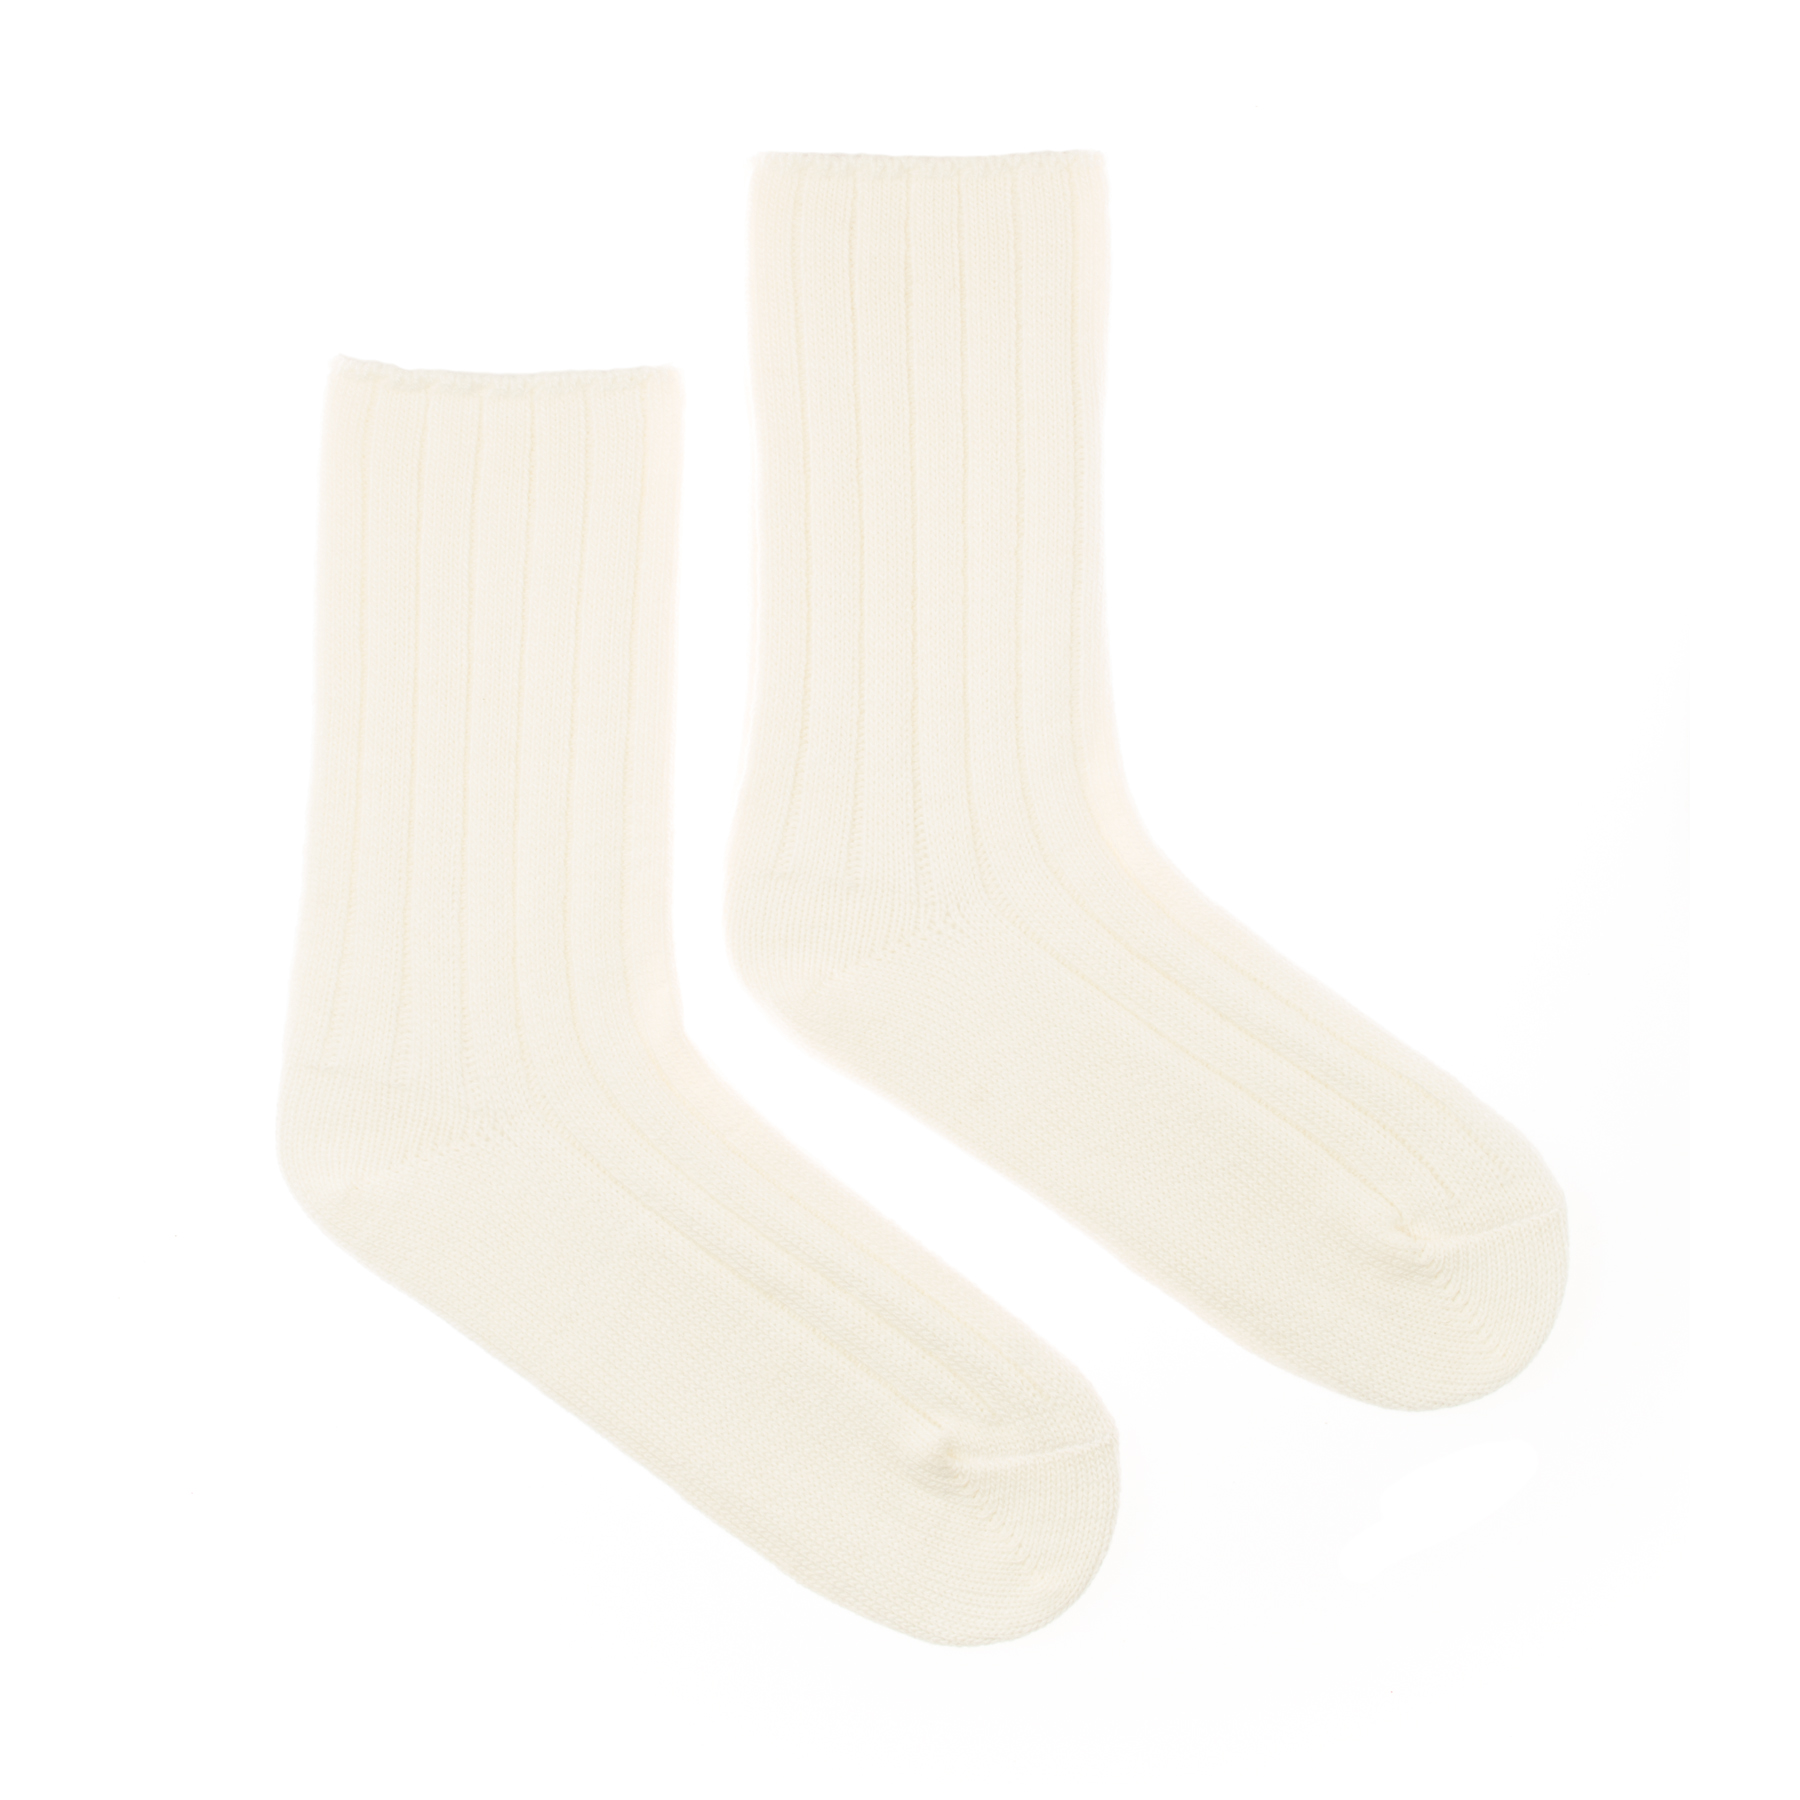 Vlněné ponožky Vlnáč rebro biely Fusakle